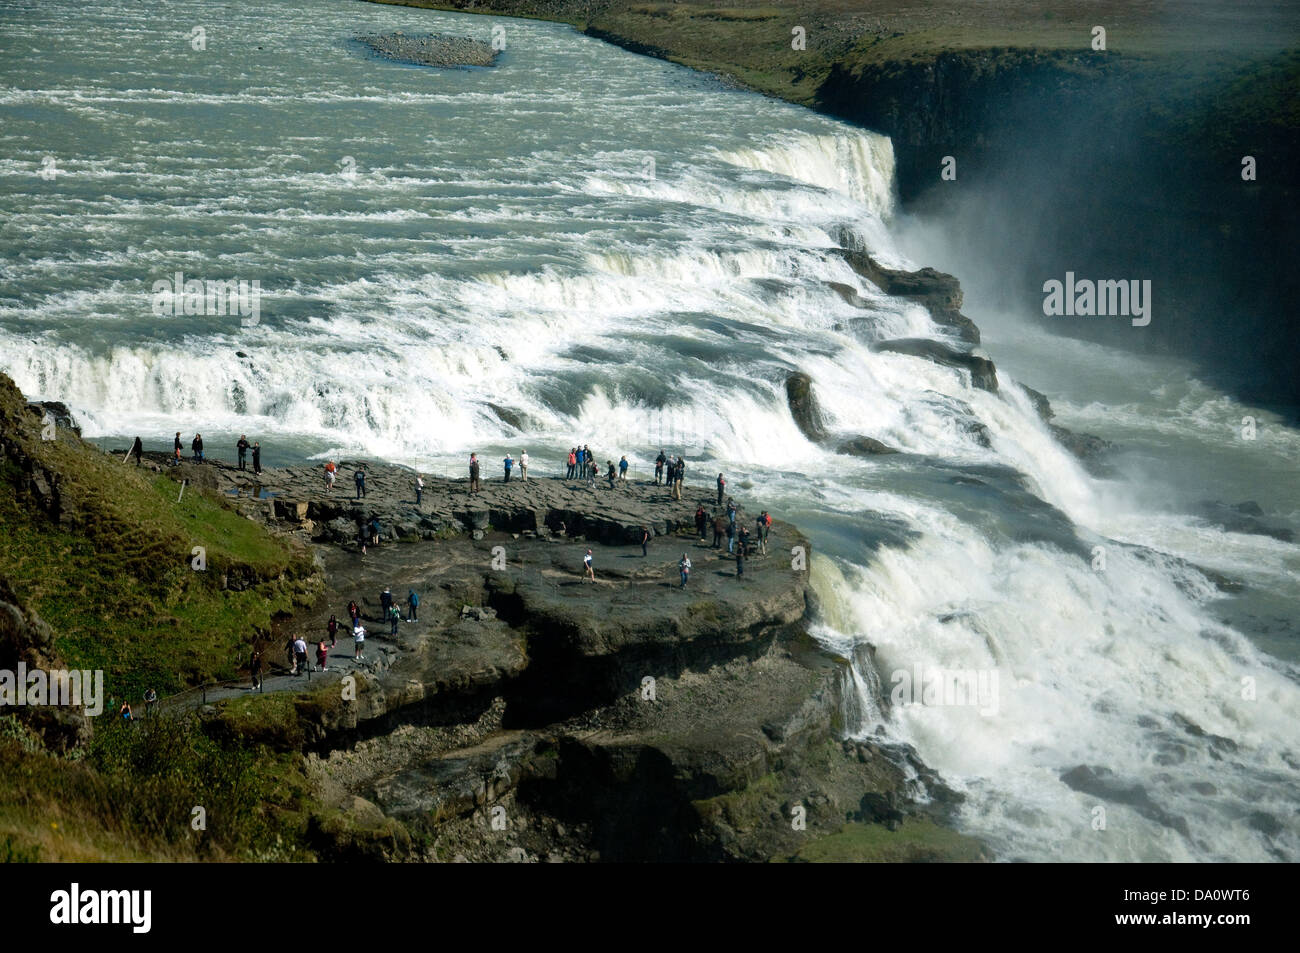 L'Islande, Gullfoss waterfall les plus spectaculaires, deux cascades sur la rivière Hvita qui coule dans une gorge profonde Banque D'Images